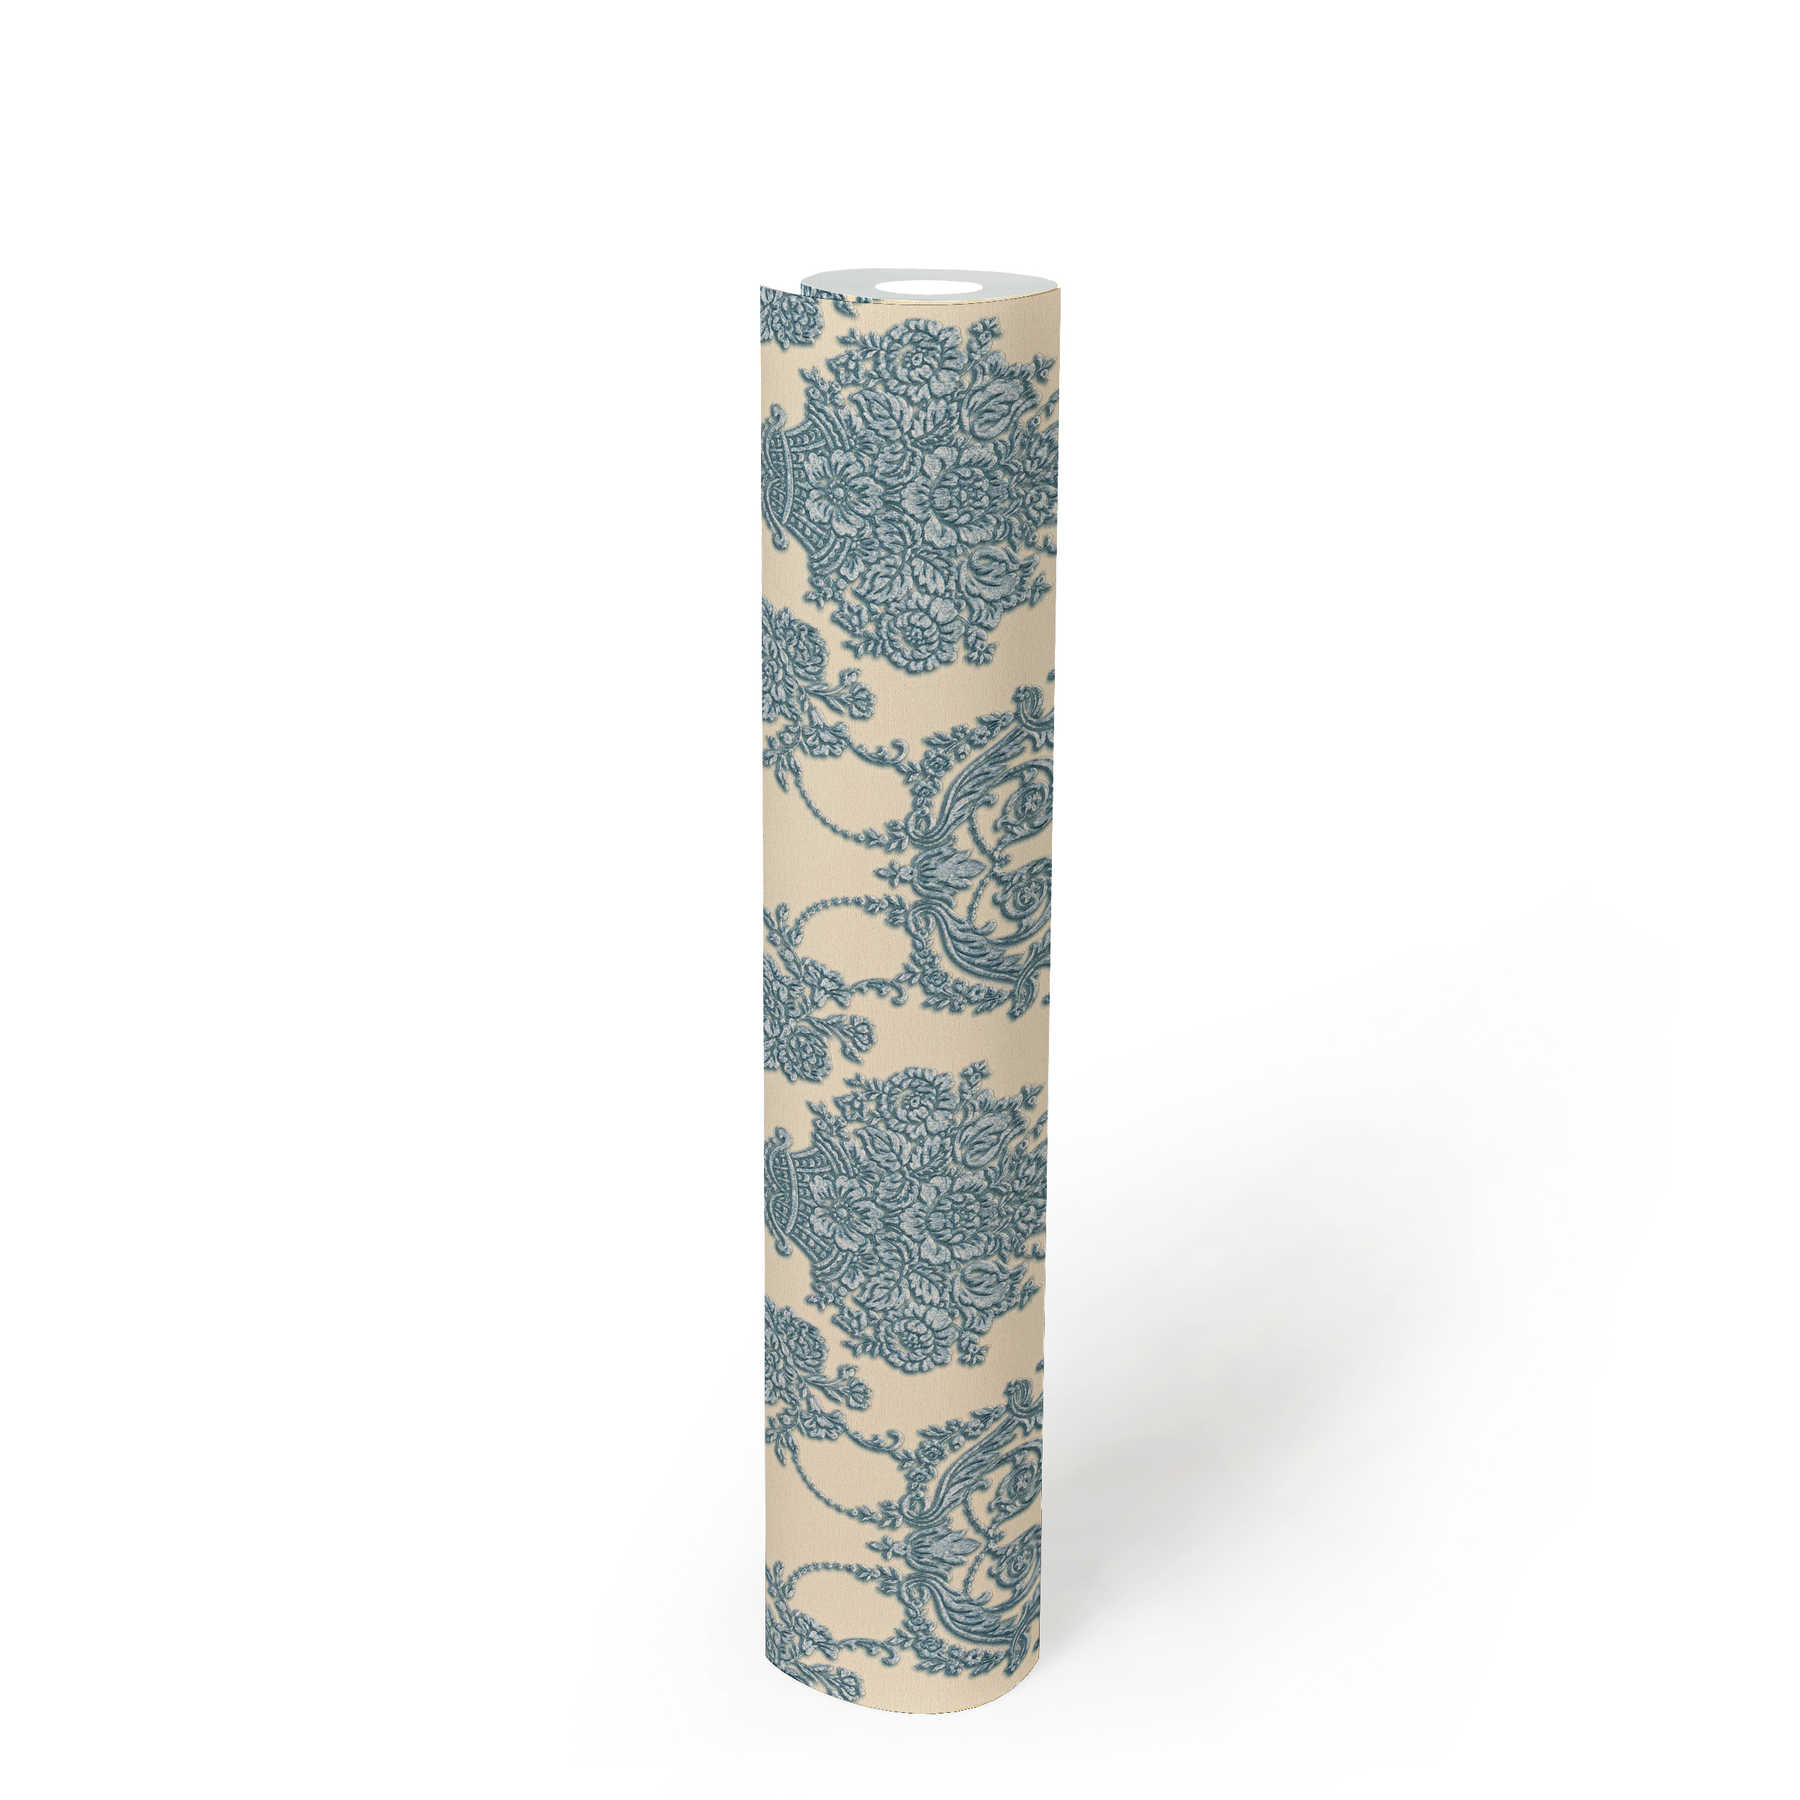             Papier peint ornemental floral avec accent métallique - beige, bleu
        